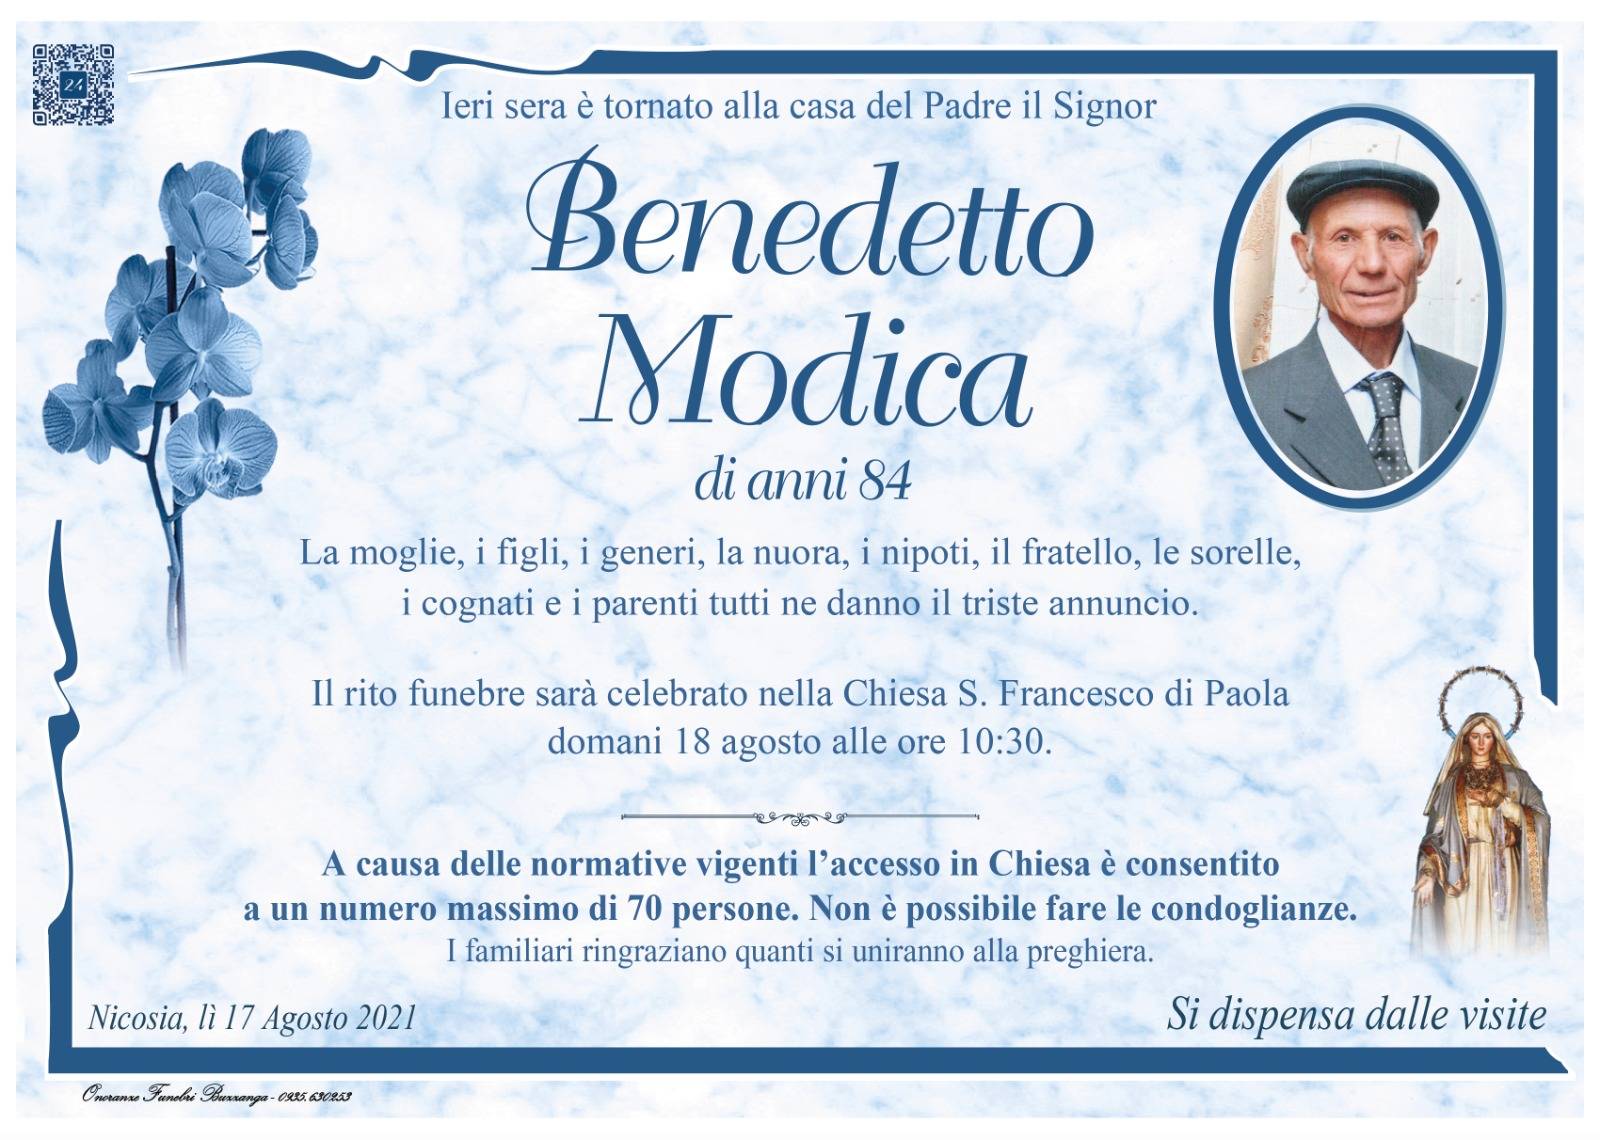 Benedetto Modica